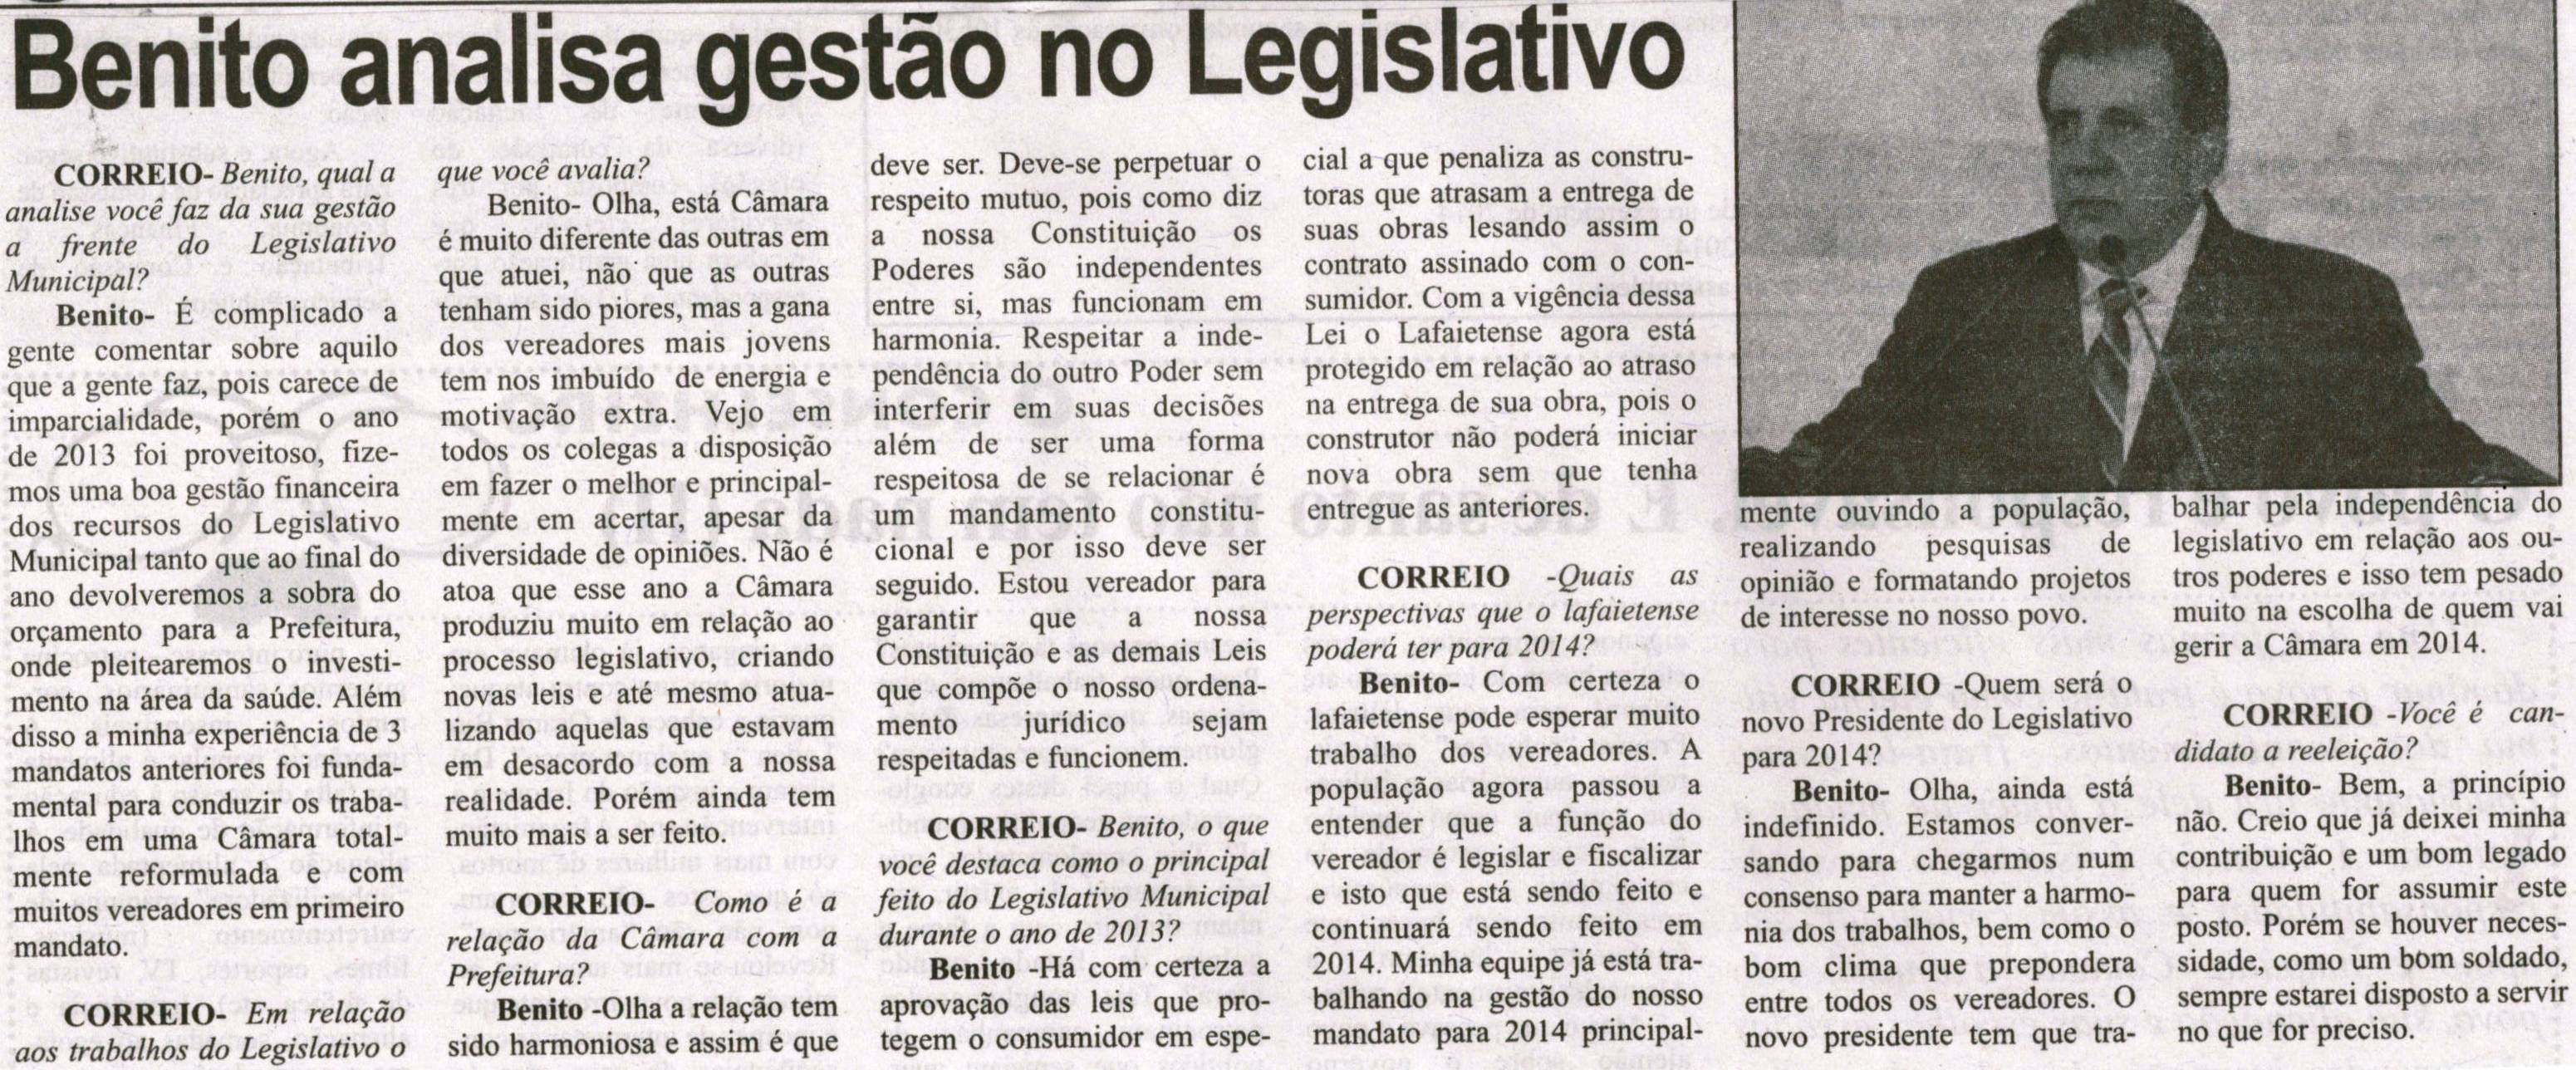 Benito analisa gestão no Legislativo. Correio de Minas, Conselheiro Lafaiete, 09 nov. 2013, p. 6.